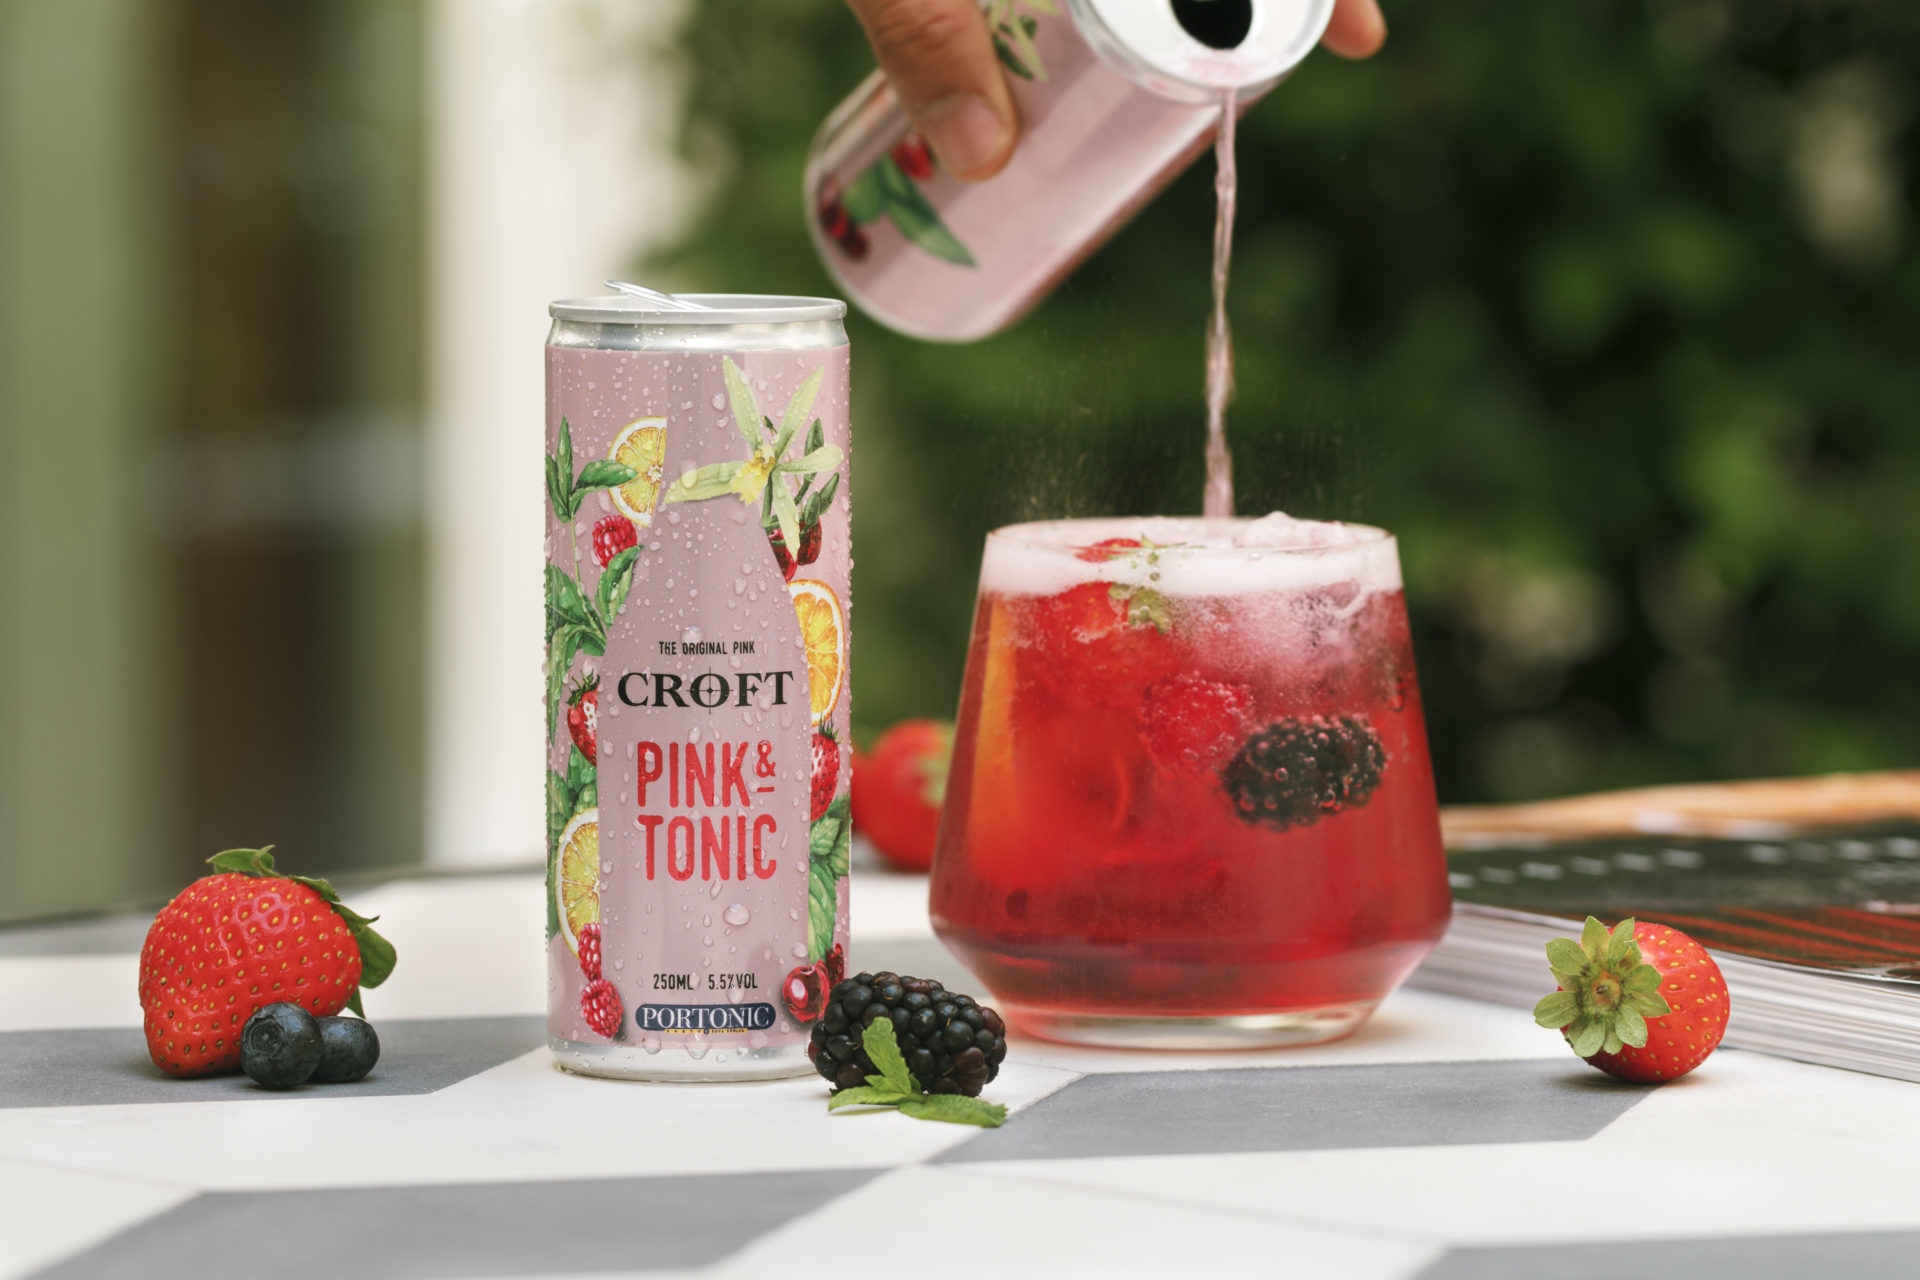 Croft Pink & Tonic apresenta-se como “o primeiro Portonic rosé em lata” - Meios & Publicidade